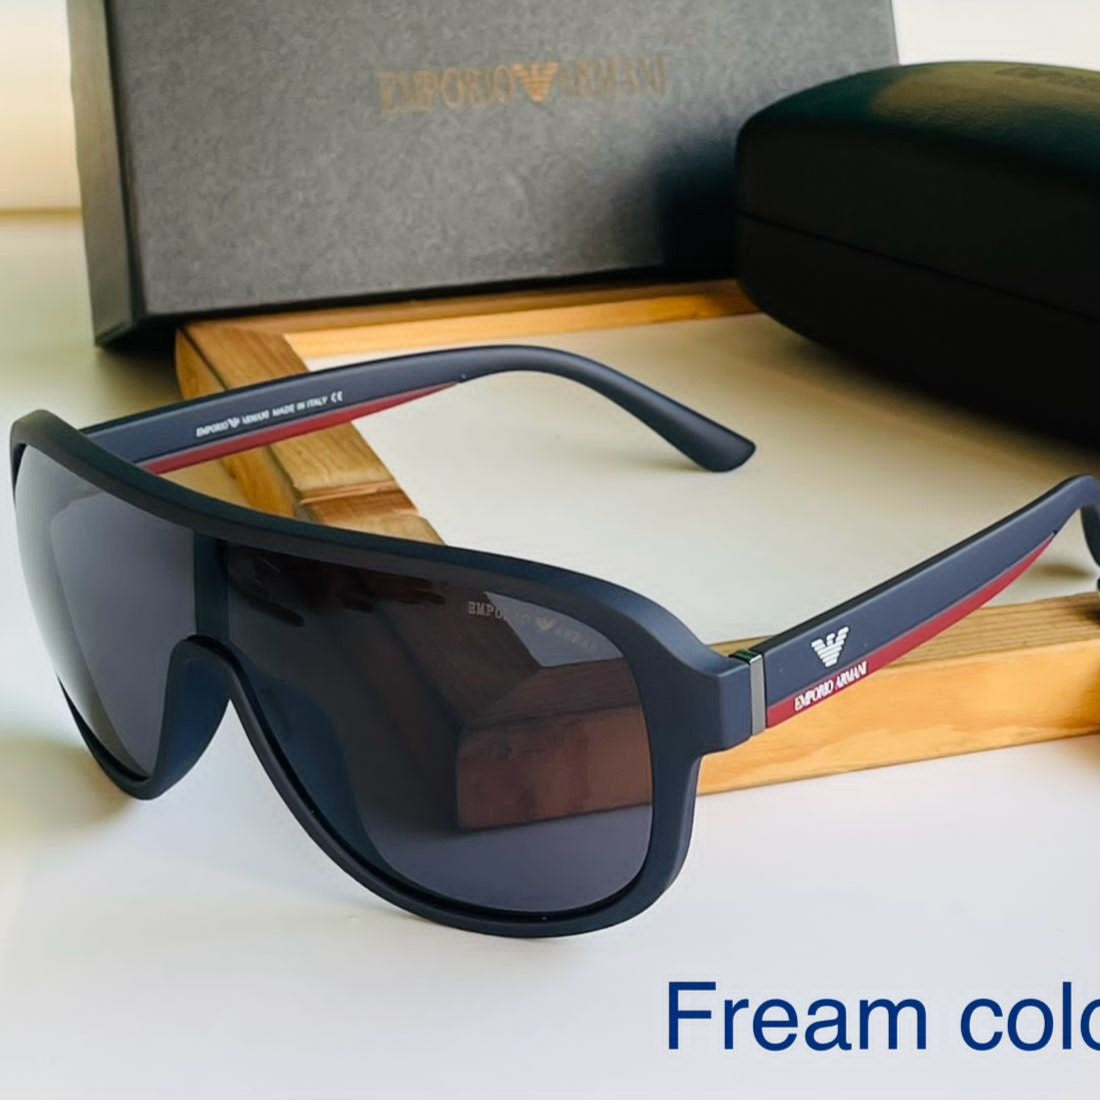 Amazing premium unisex model Armni sunglasses - AmazingBaba